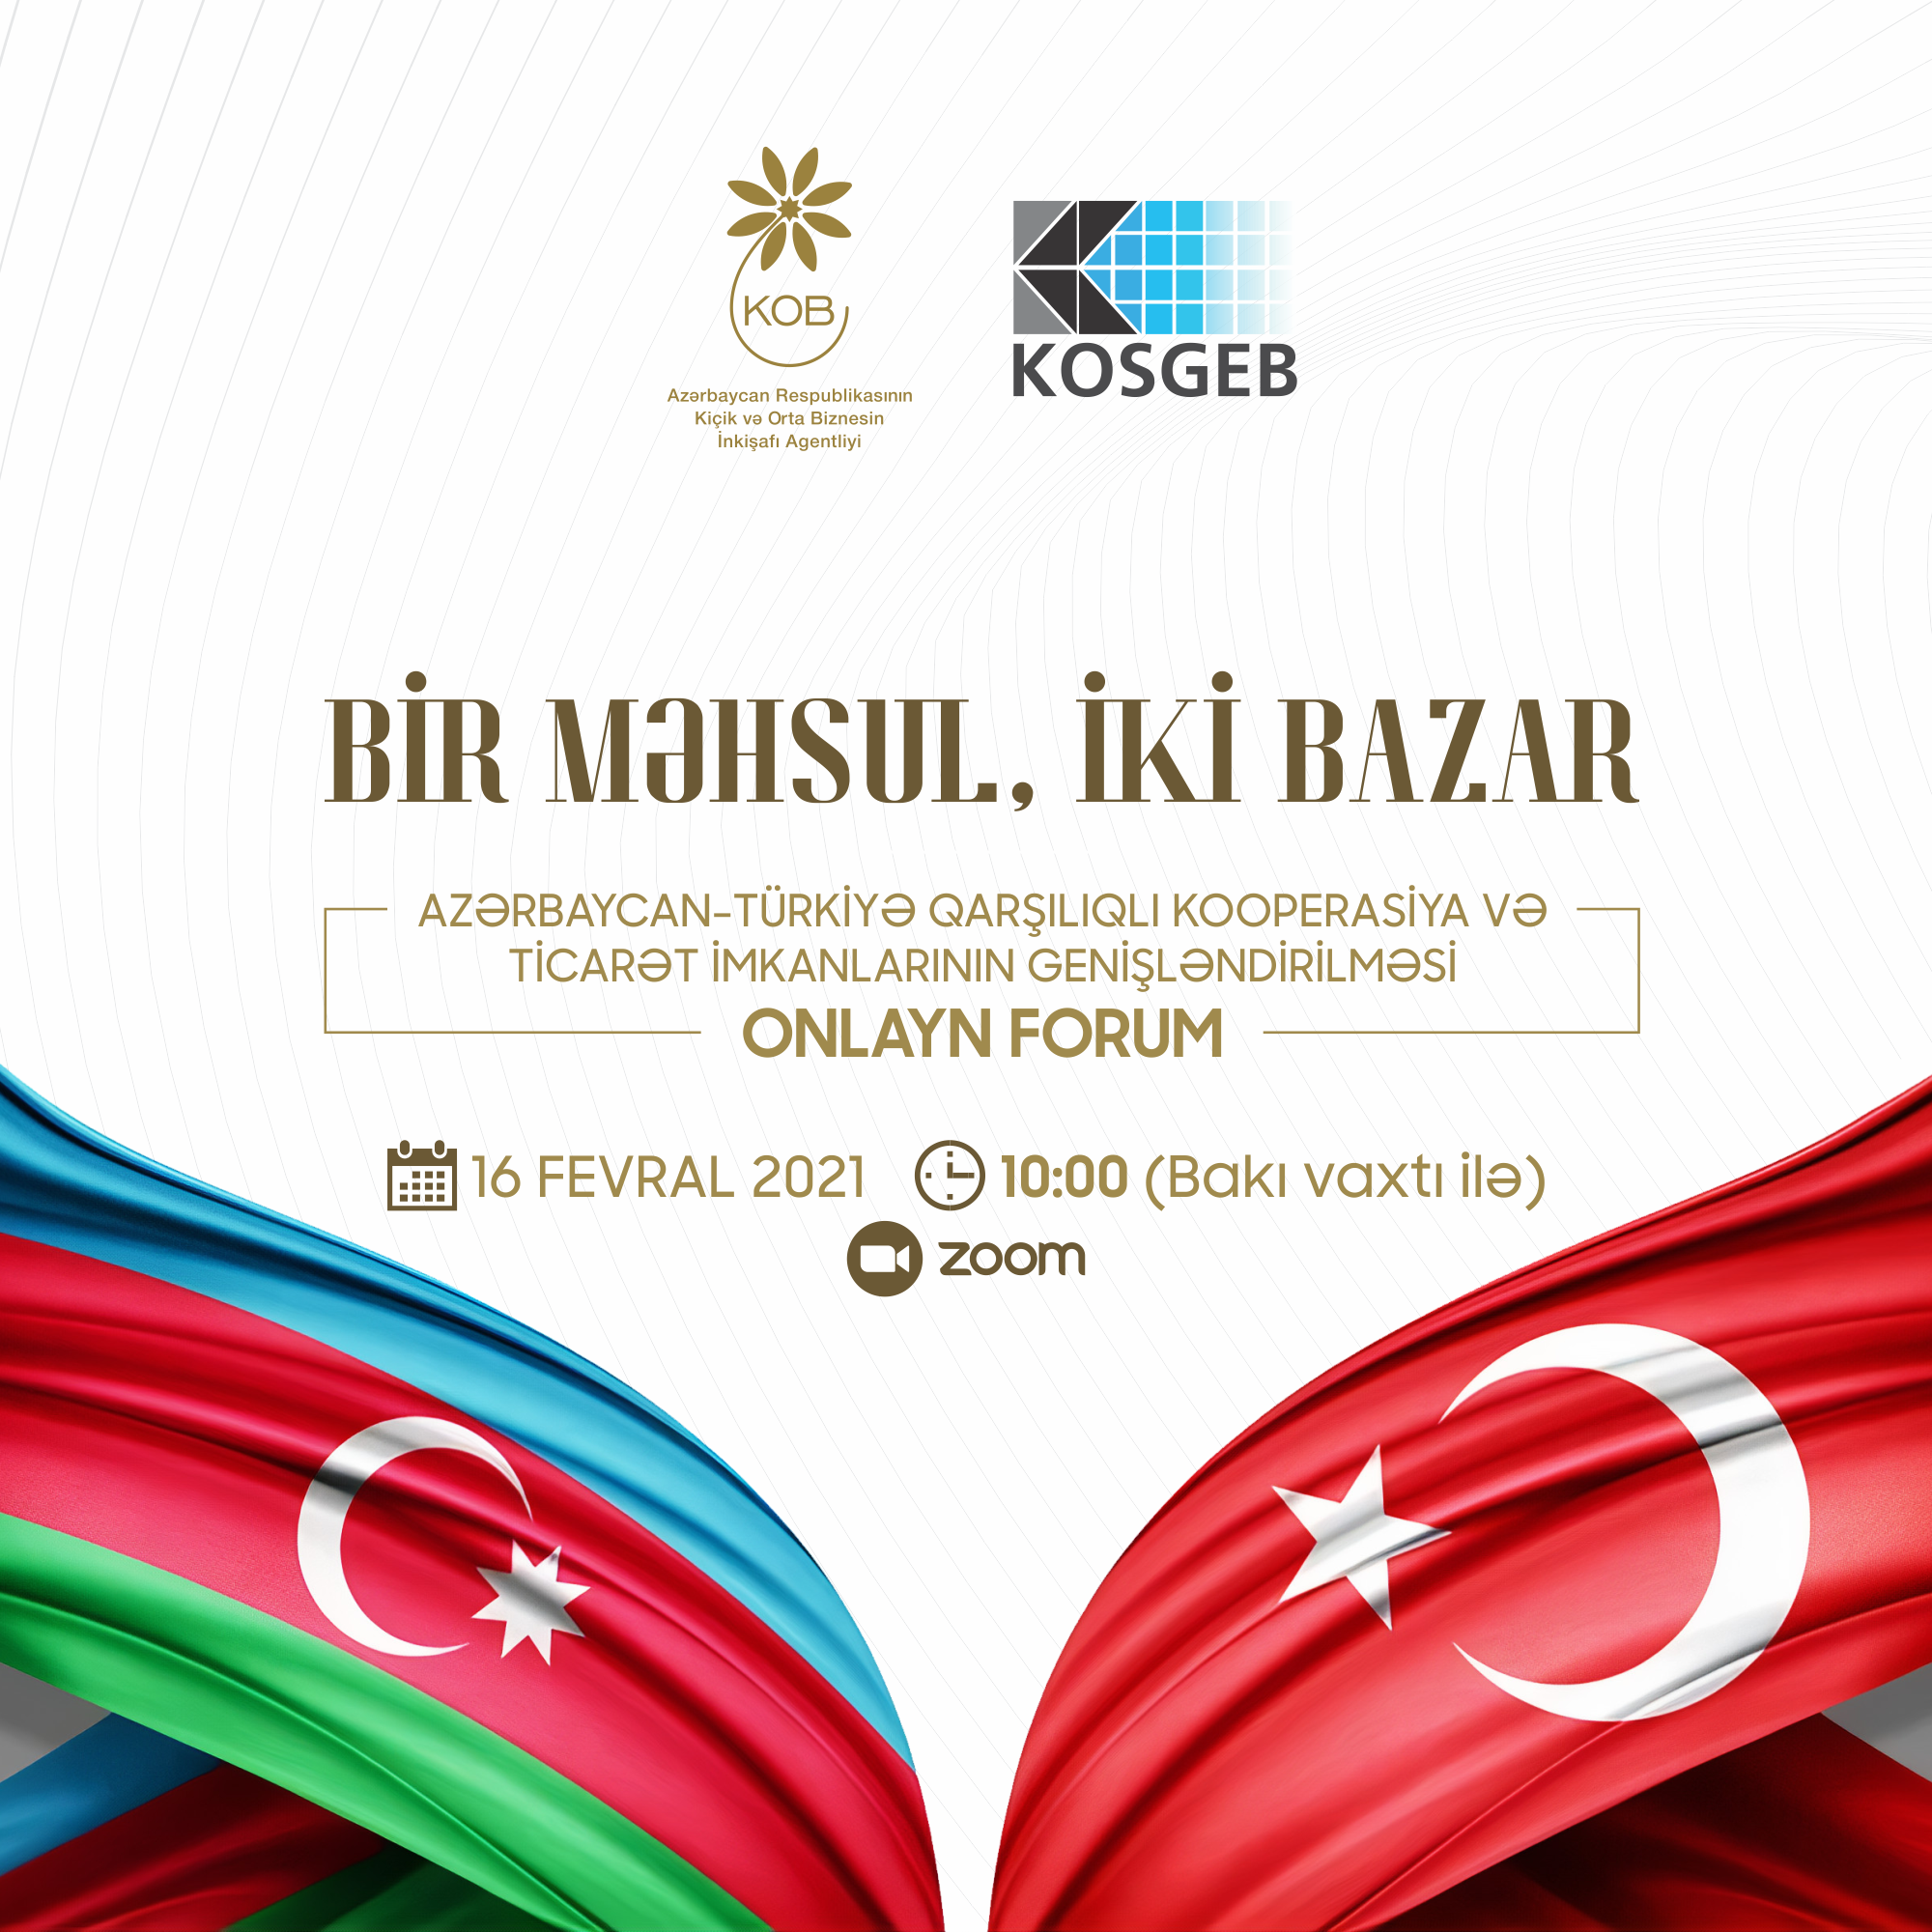 "Bir məhsul, iki bazar" mövzusunda birgə Azərbaycan-Türkiyə onlayn forumu keçiriləcək 